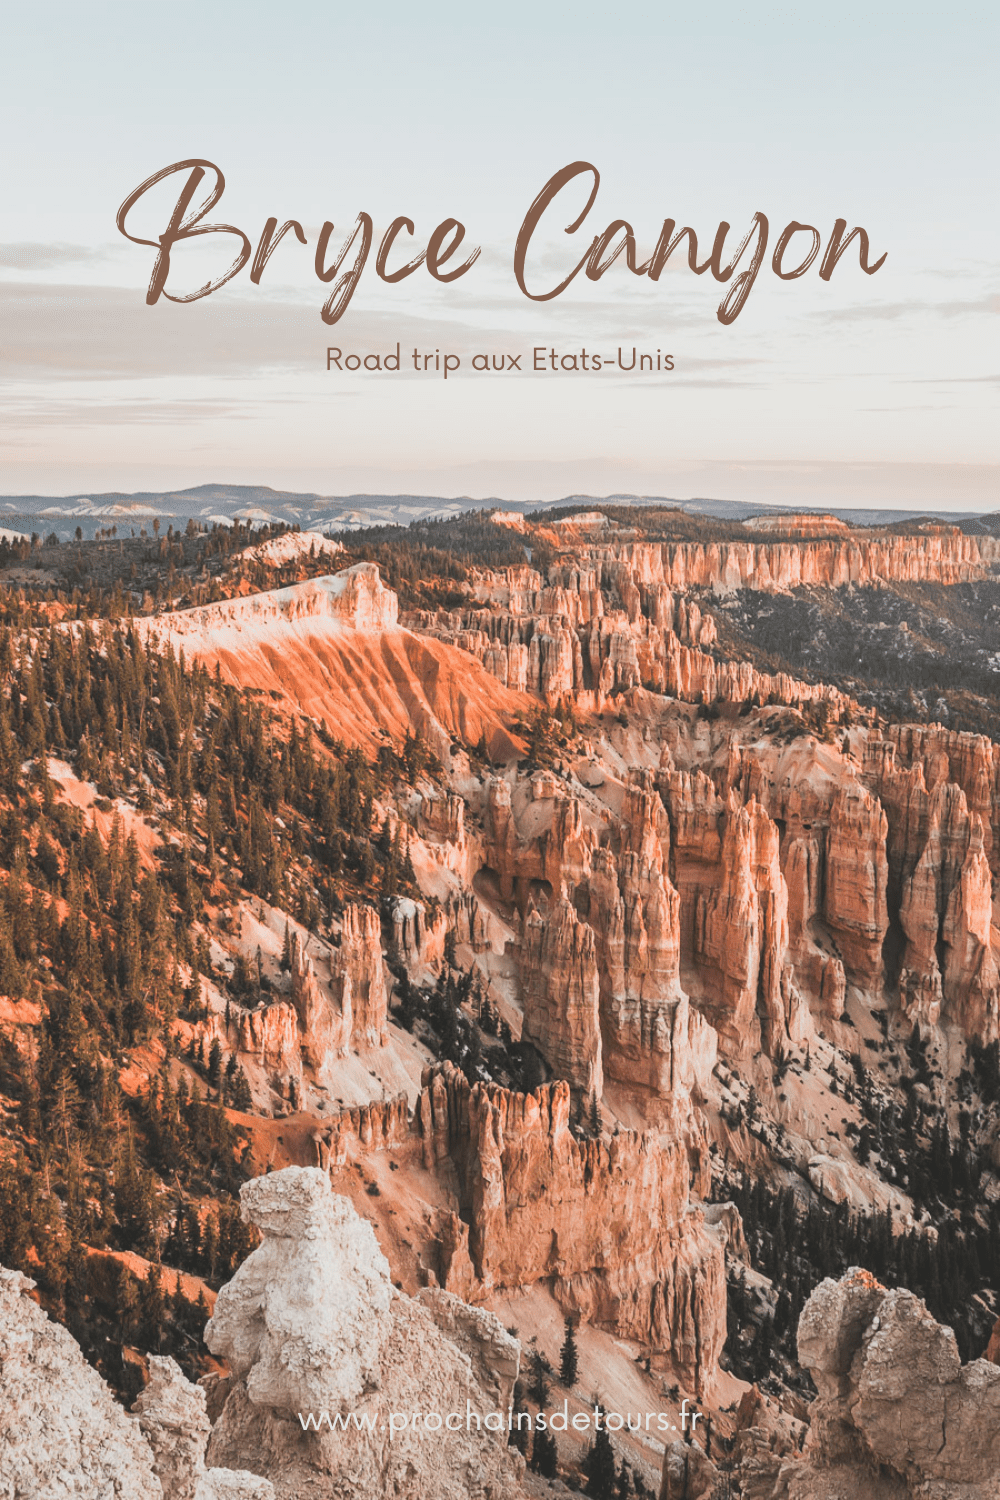 Le parc national de Bryce Canyon est une merveille naturelle à nulle autre pareille. Situé dans le sud de l'Utah, le parc abrite certains des paysages les plus époustouflants, avec ses parois de canyon emblématiques, ses hoodoos et ses vastes canyons créant une expérience d'un autre monde. Des randonnées exaltantes aux magnifiques couchers de soleil, il y a quelque chose pour tout le monde à explorer et à apprécier. Venez explorer la beauté du parc national de Bryce Canyon !